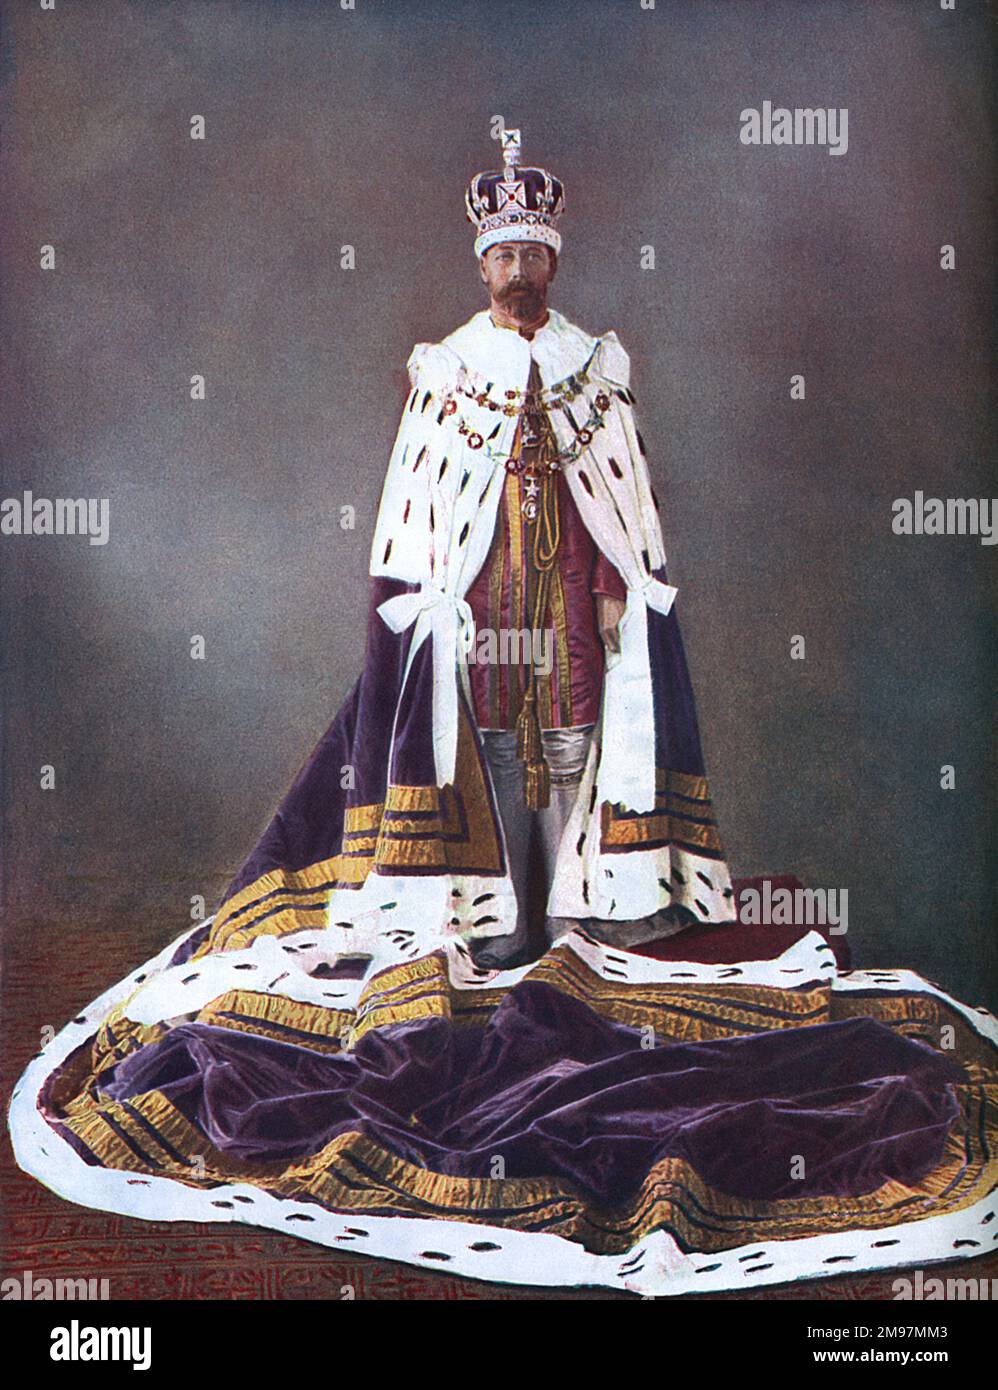 König George V (1865-1936, regiert 1910-1936). Hier in seinen Durbar-Gewändern und seiner Krone. Stockfoto